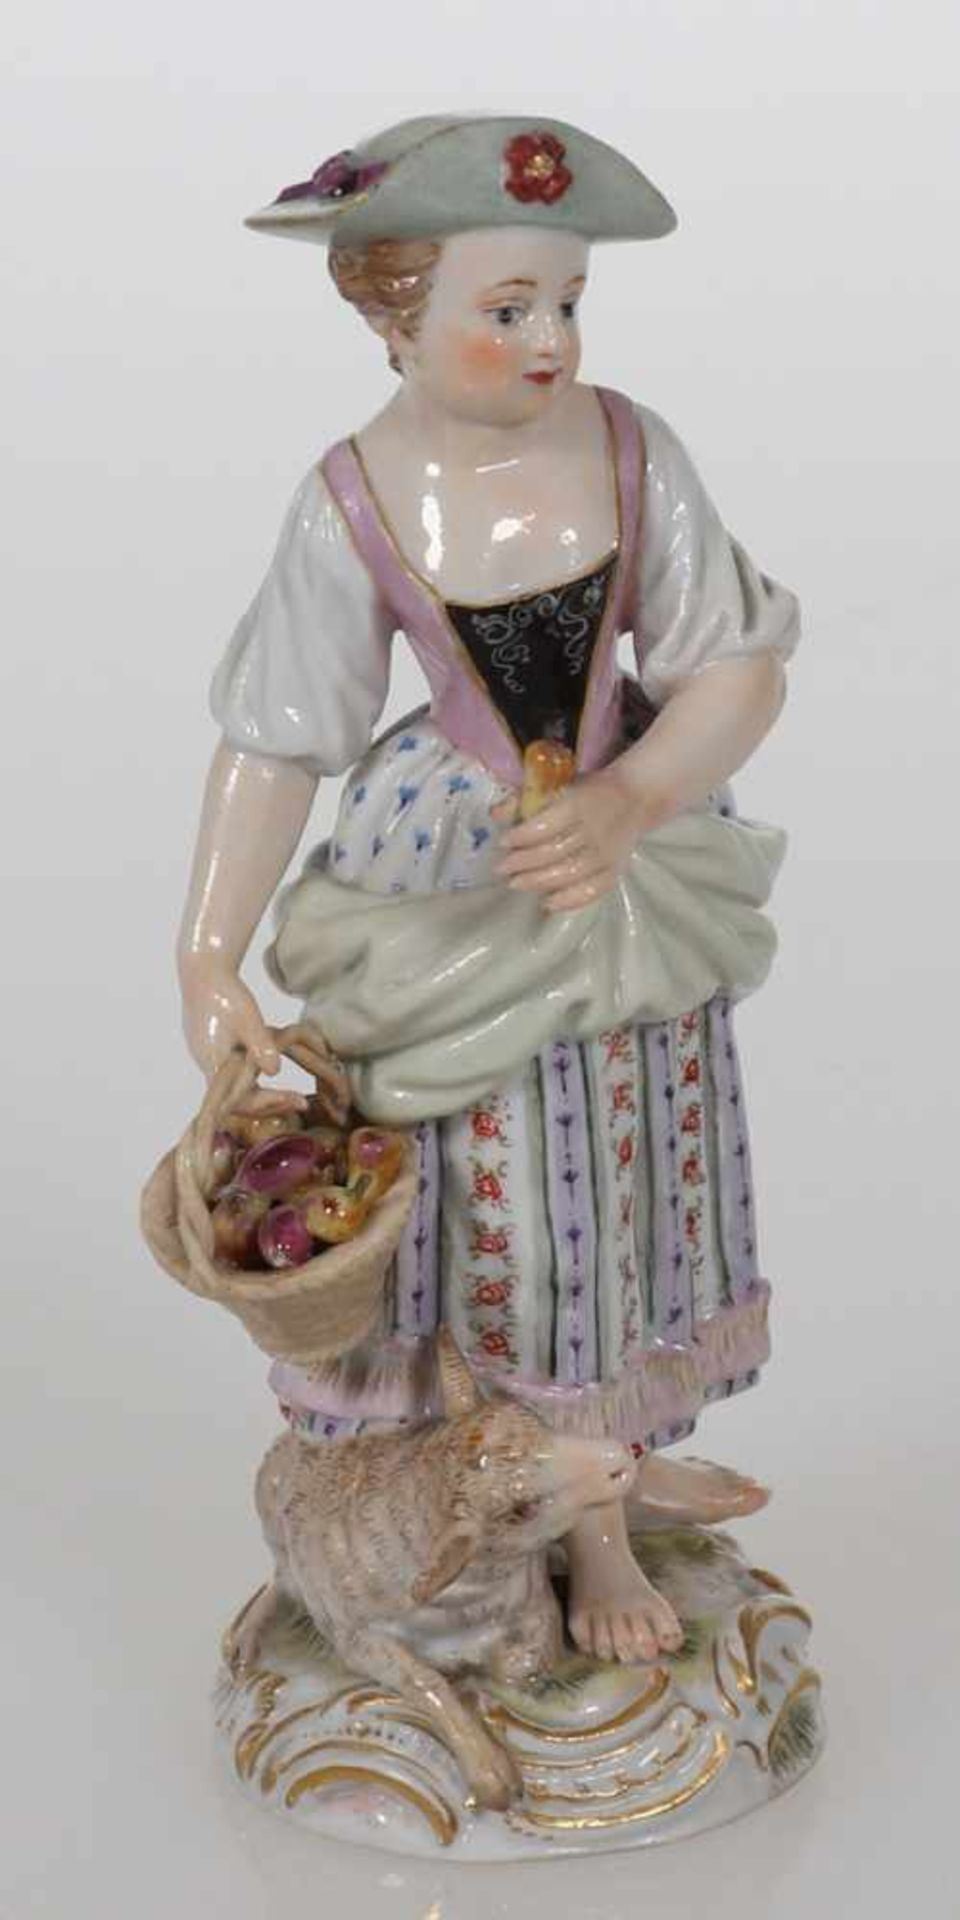 Gärtnerkind mit LammKönigliche und Staatliche Porzellan Manufaktur, Meissen 1850-1924. Porzellan,